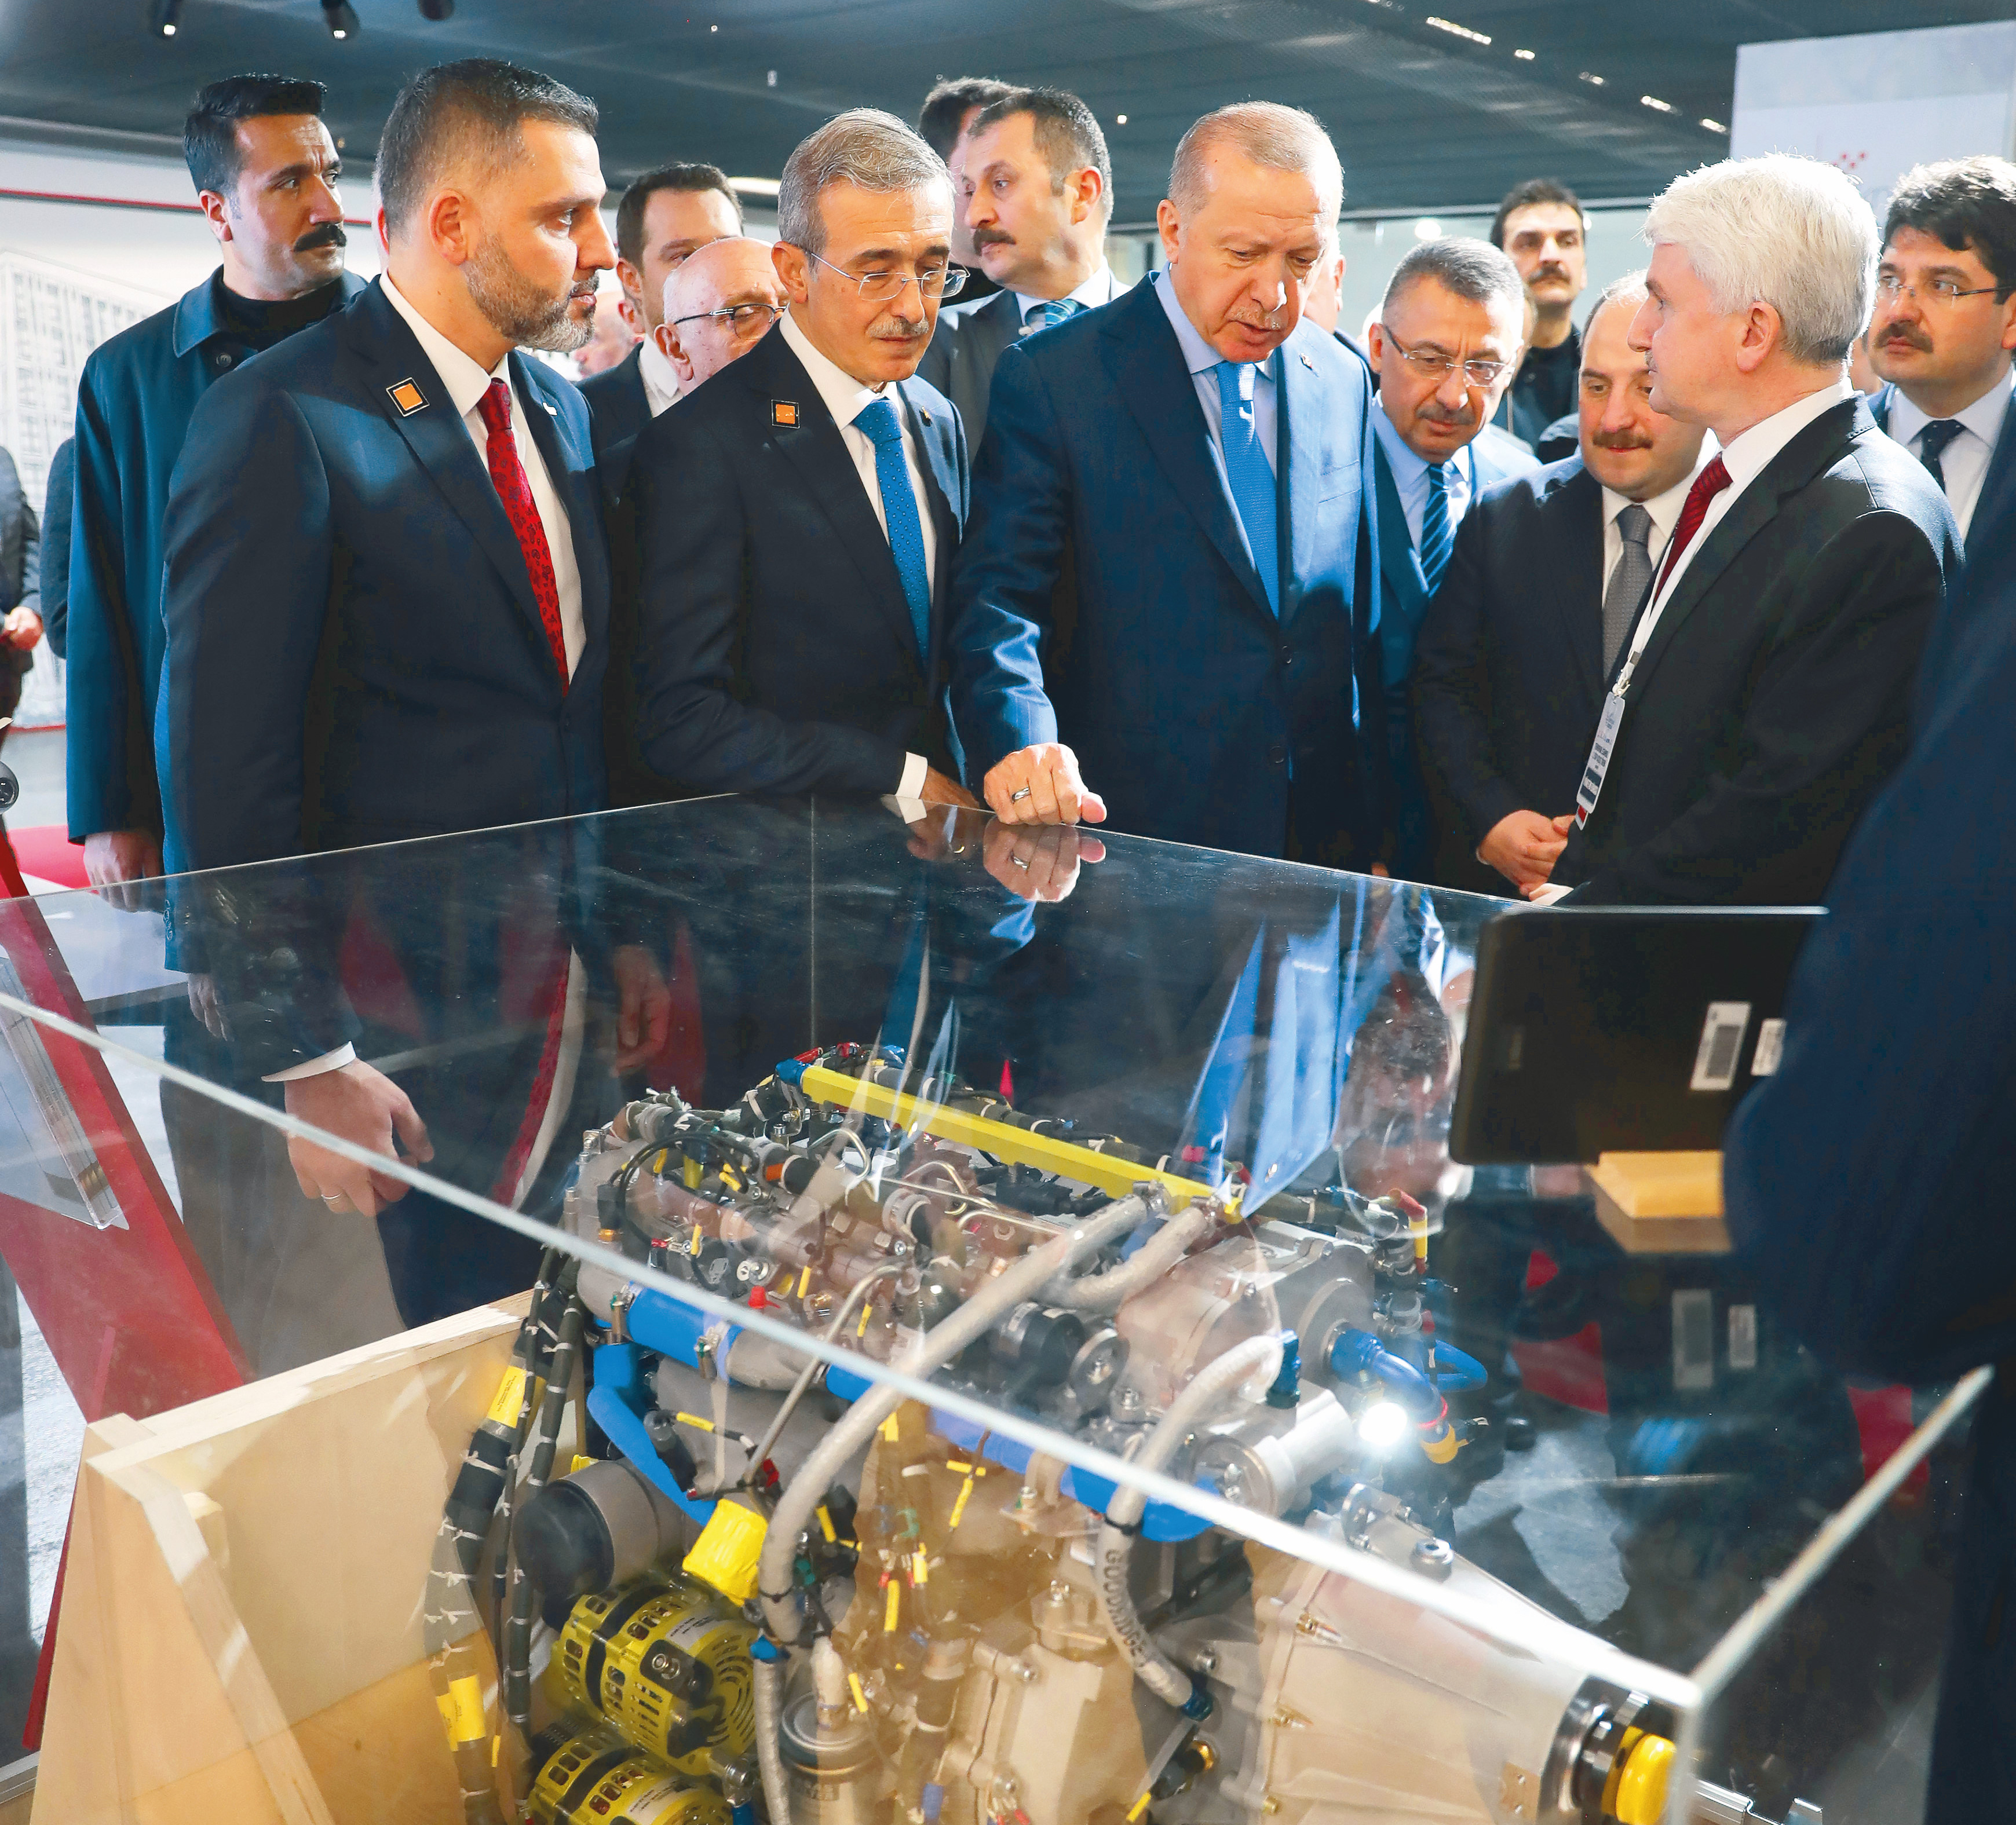 Cumhurbaşkanı Erdoğan Teknopark İstanbul’da geliştirilen ürünleri inceledi.